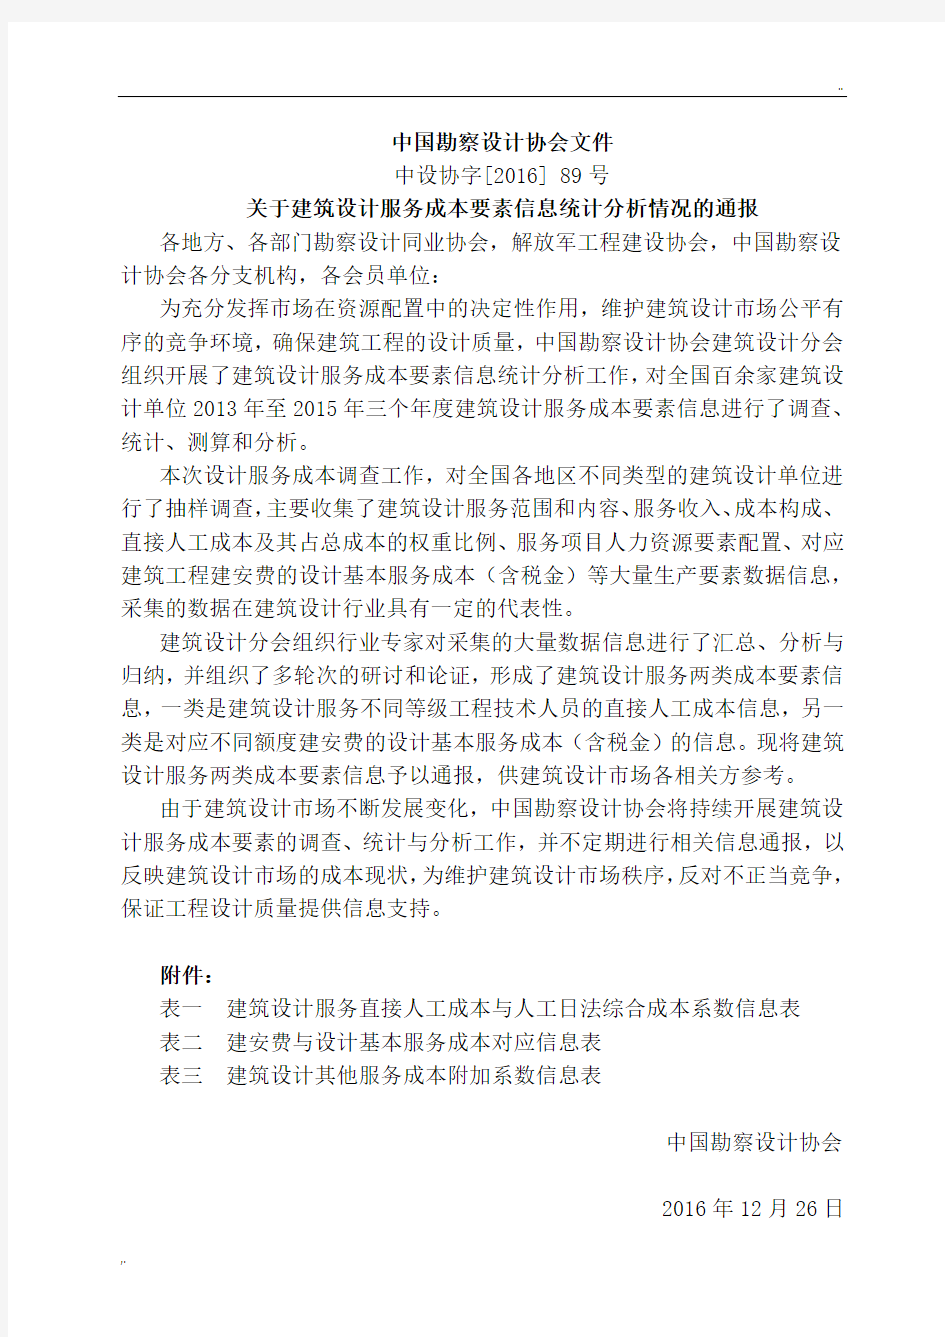 中国勘察设计协会文件勘察设计费计算参考